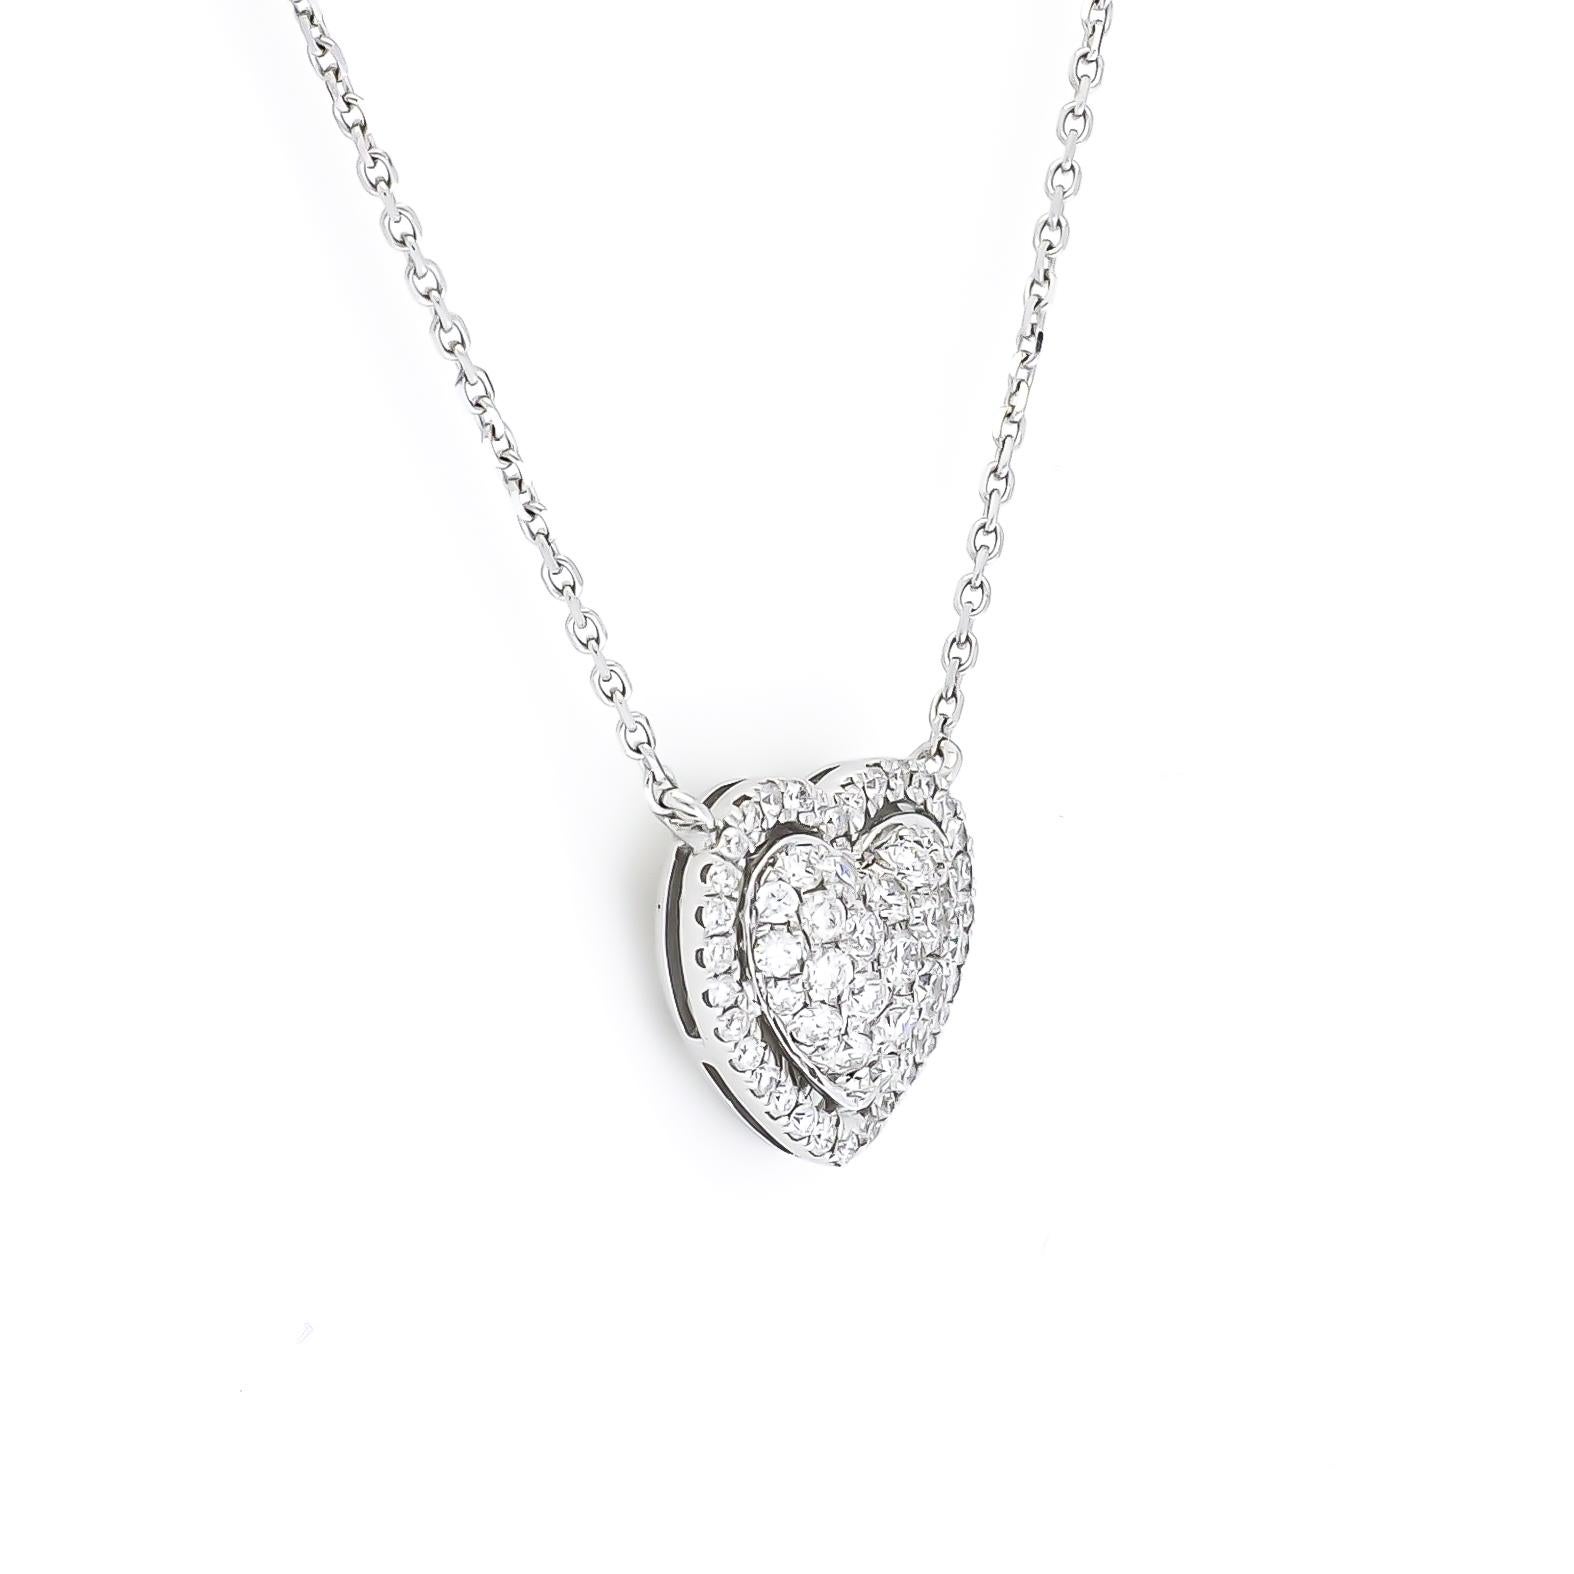 Art Nouveau Natural Diamond Pendant 0.55 cts 18KT White Gold Heart Pendant Necklace For Sale